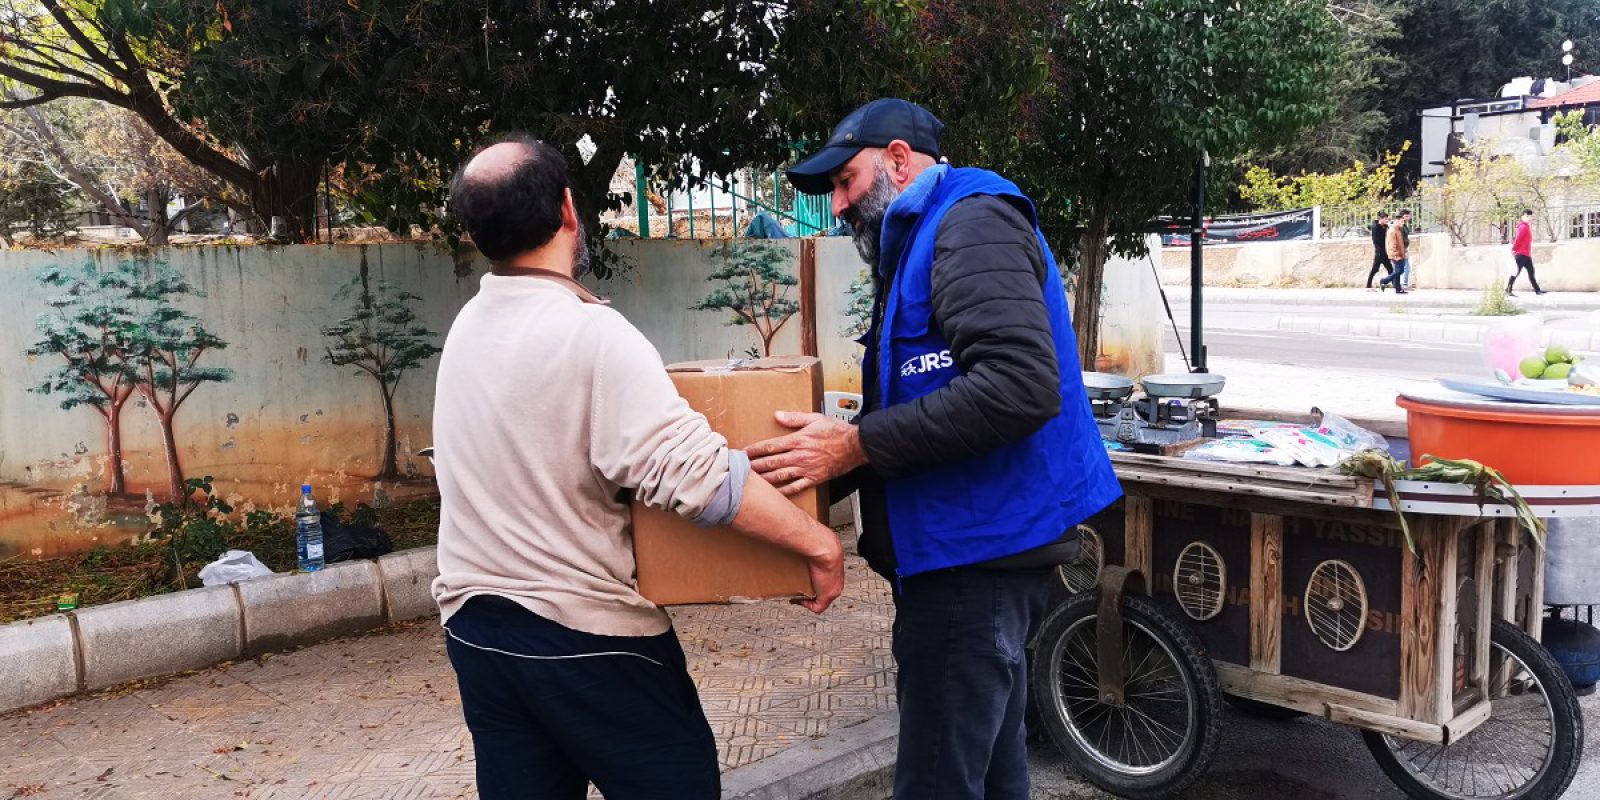 Après les tremblements de terre en Syrie, le personnel du JRS a distribué de la nourriture et d'autres articles aux familles dans le besoin. Gerry Baumgartner, jésuite scolastique, raconte son expérience d'espoir et de solidarité en Syrie au service des personnes déplacées.